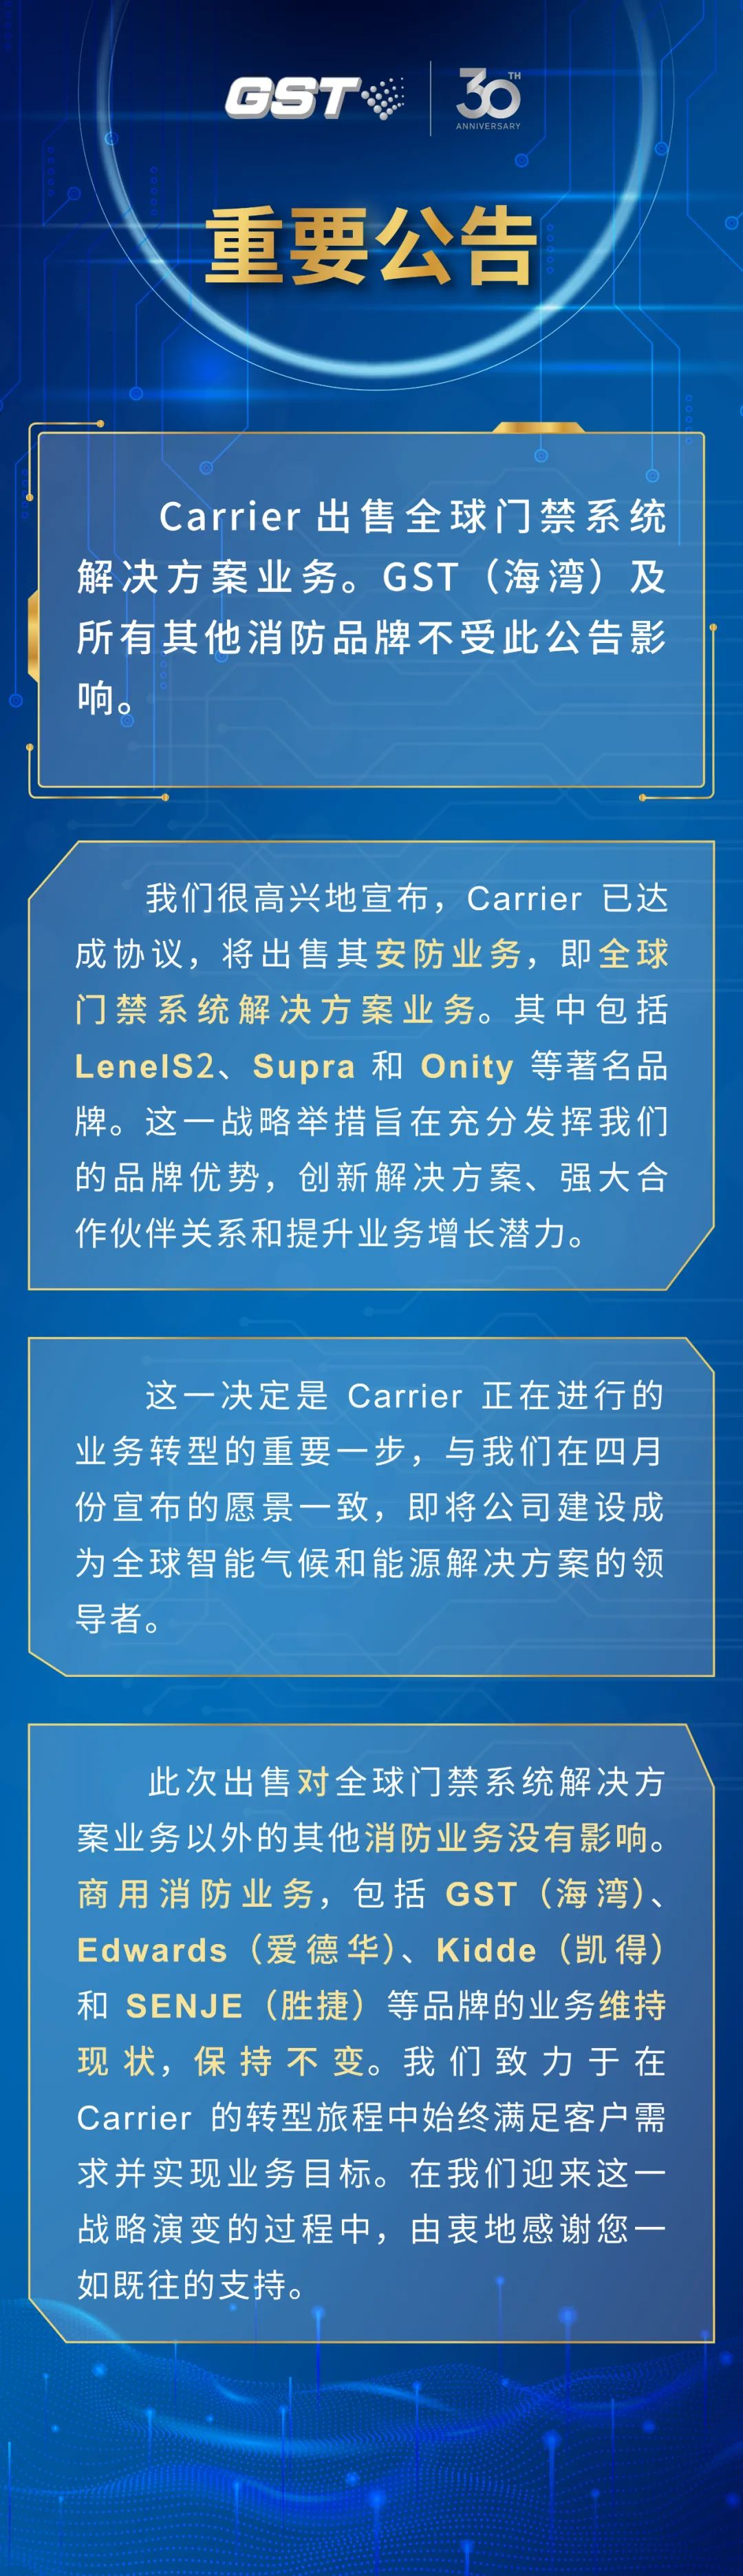 Carrier 出售方案不包含GST（天津海湾）及所有其他消防品牌